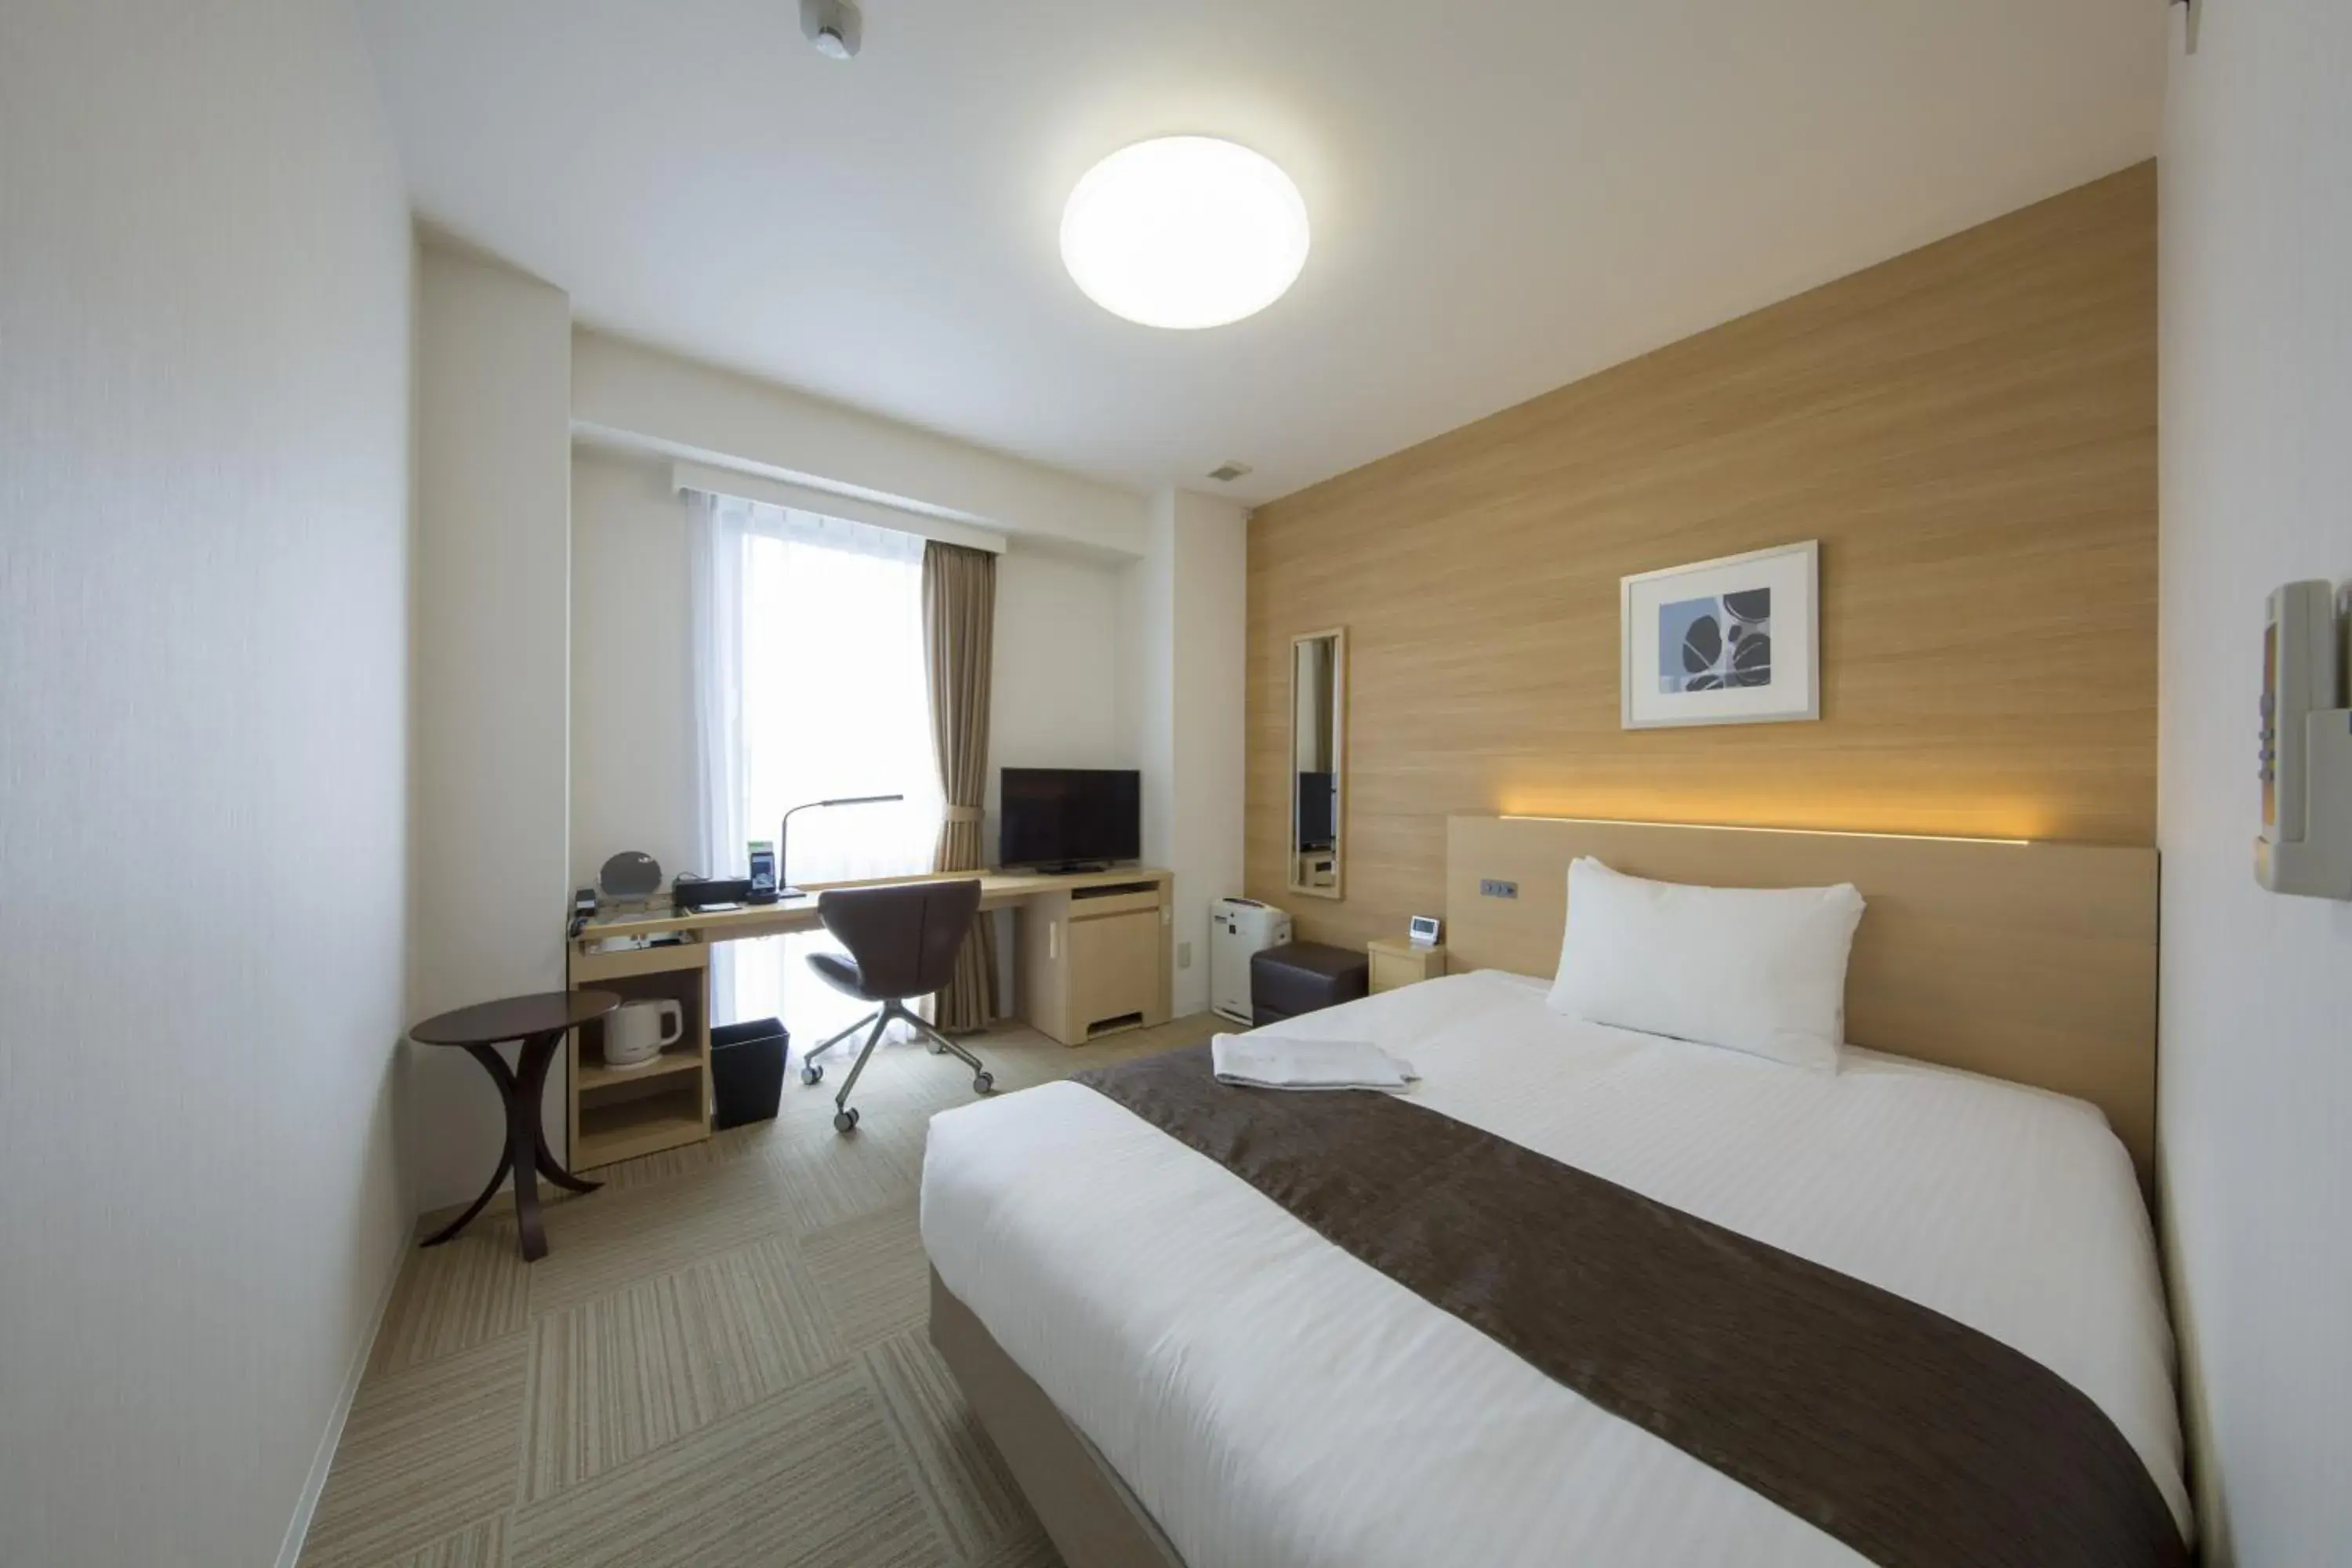 Area and facilities, Bed in Shizutetsu Hotel Prezio Shizuoka Ekinan